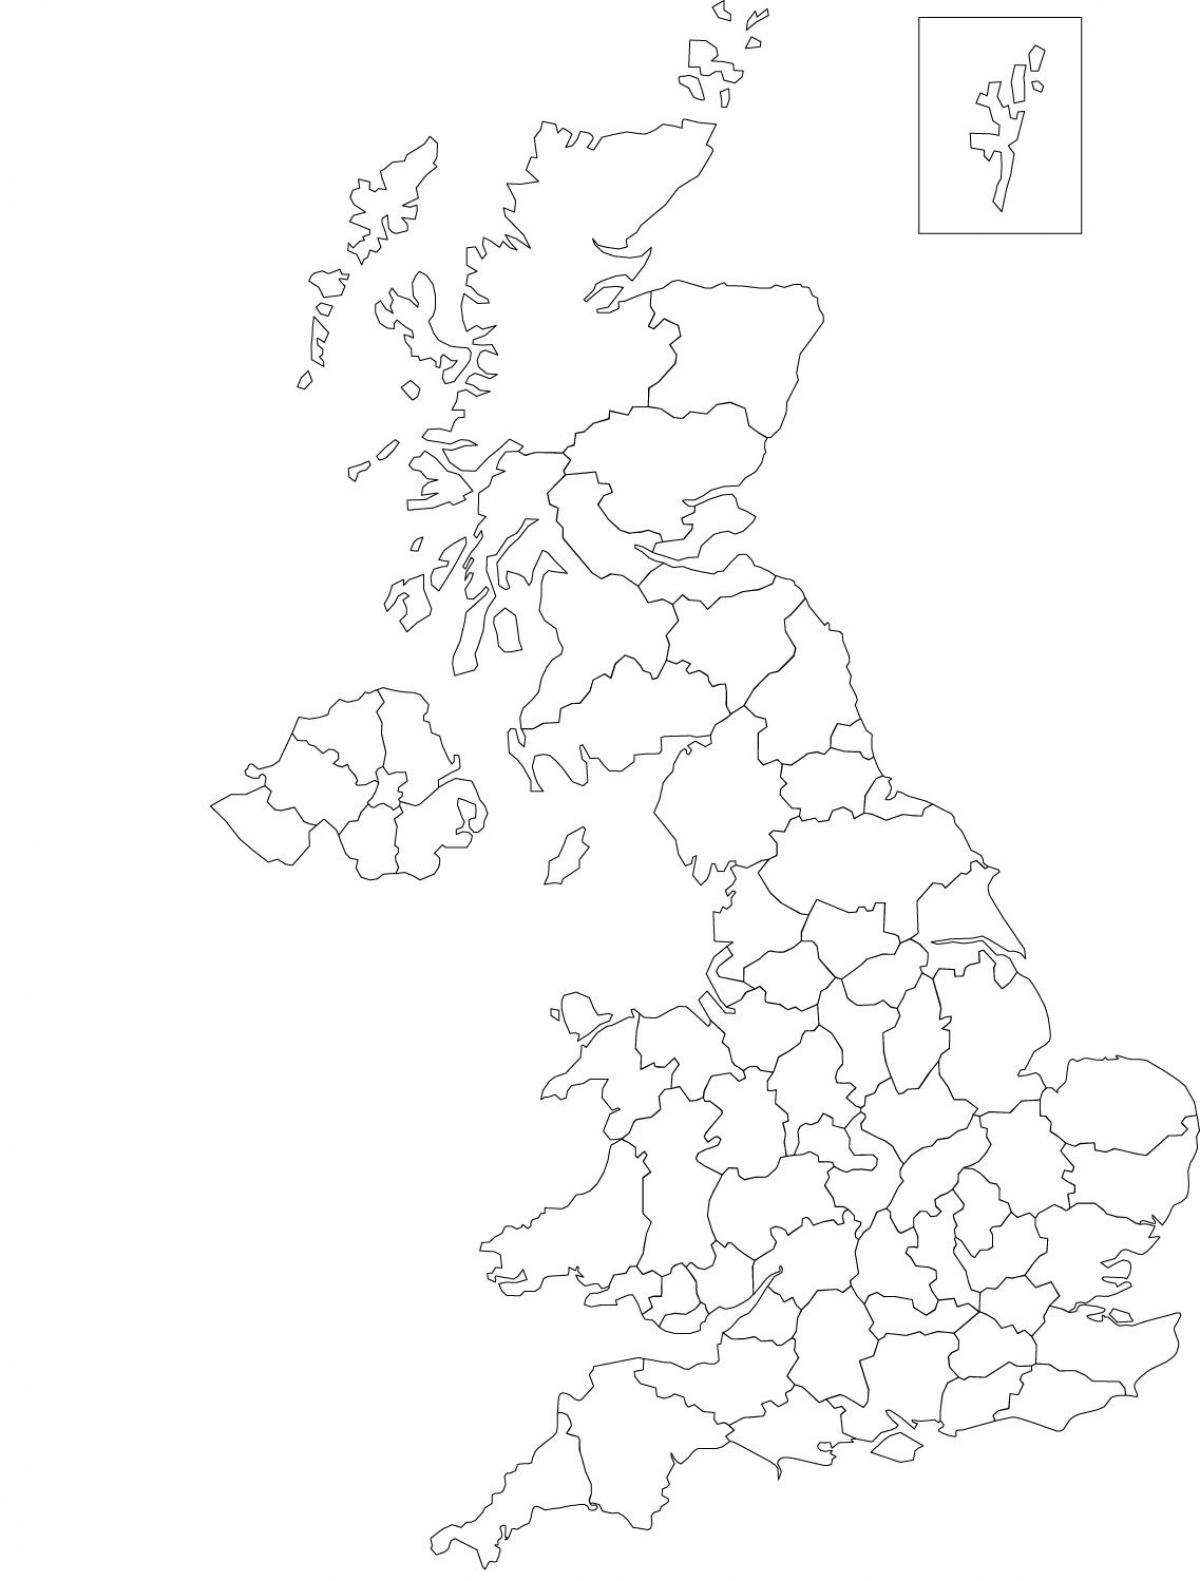 Mapa de contornos do Reino Unido (UK)